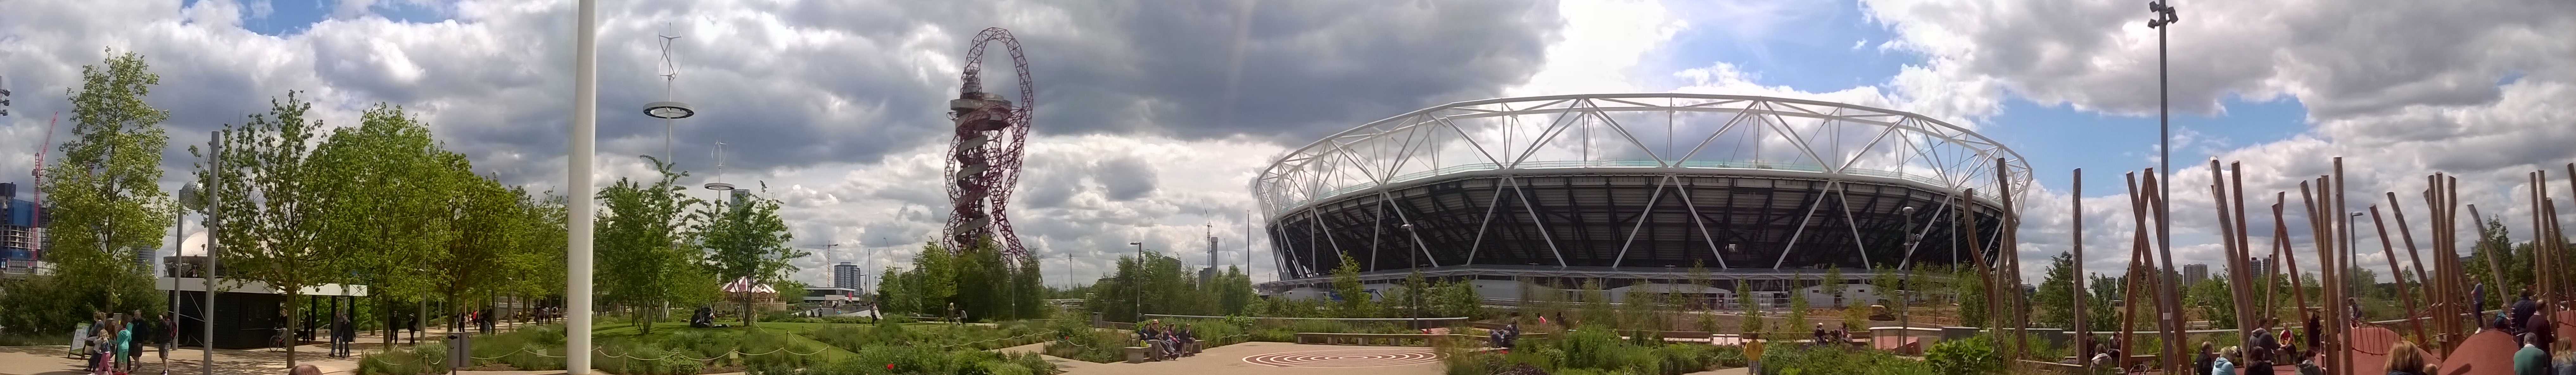 London olympic park panorama.jpg